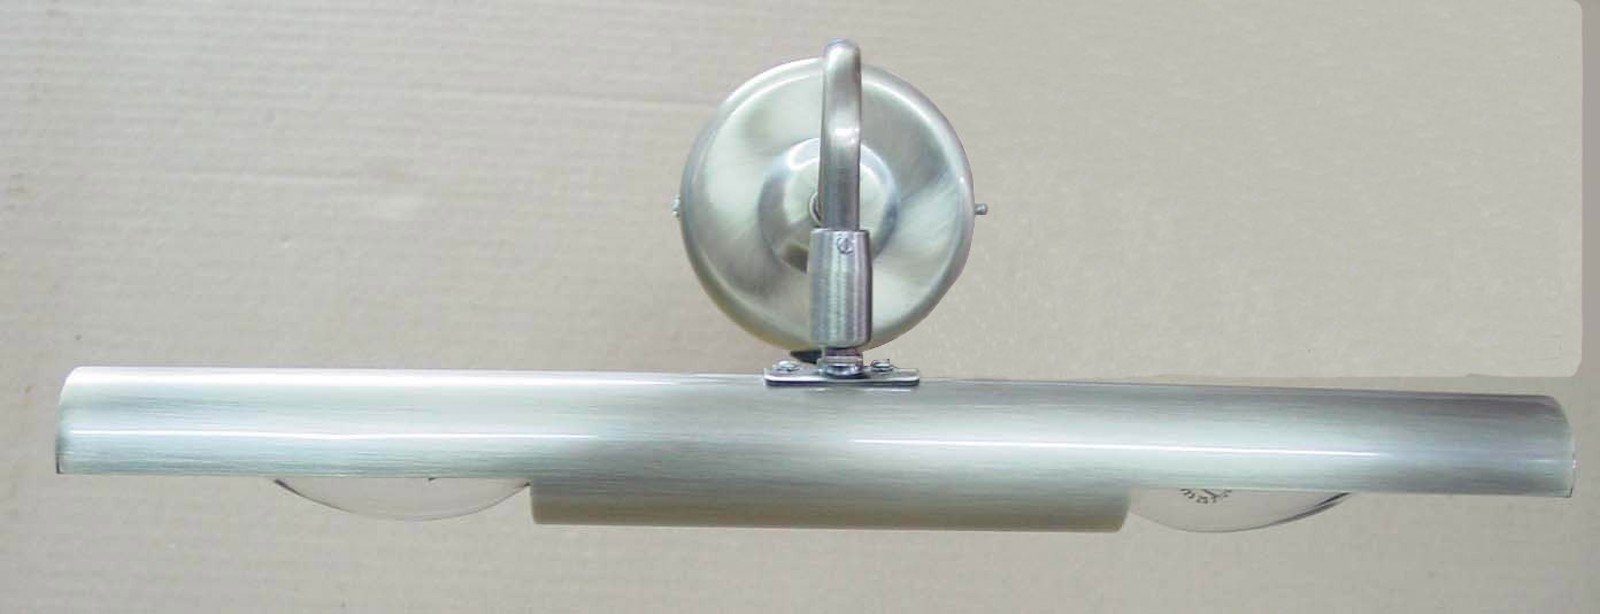 Schalter GLOBO Altmessing Wandlampe Wandleuchte Wandleuchte 4405 LED E14-Fassung Globo